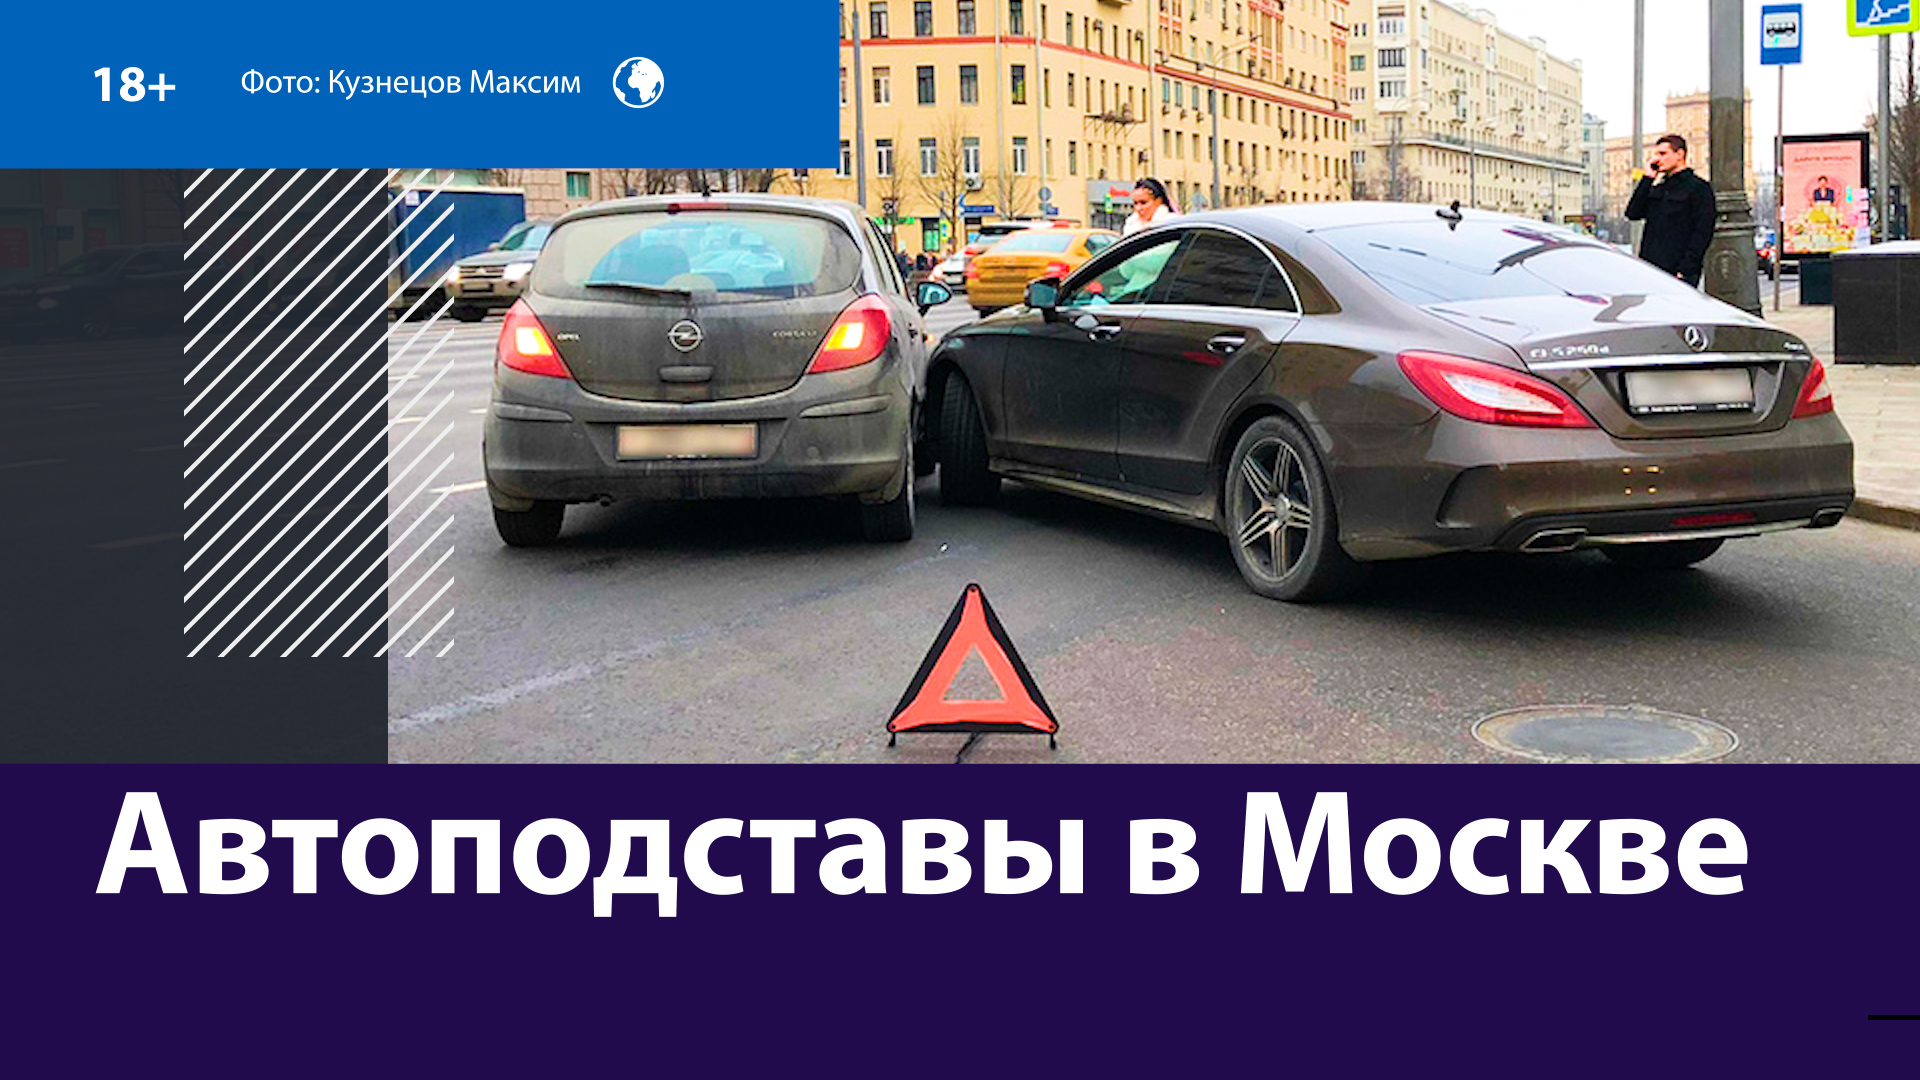 В Москве задержали автоподставщика, вымогавшего деньги у водителей — Москва FM